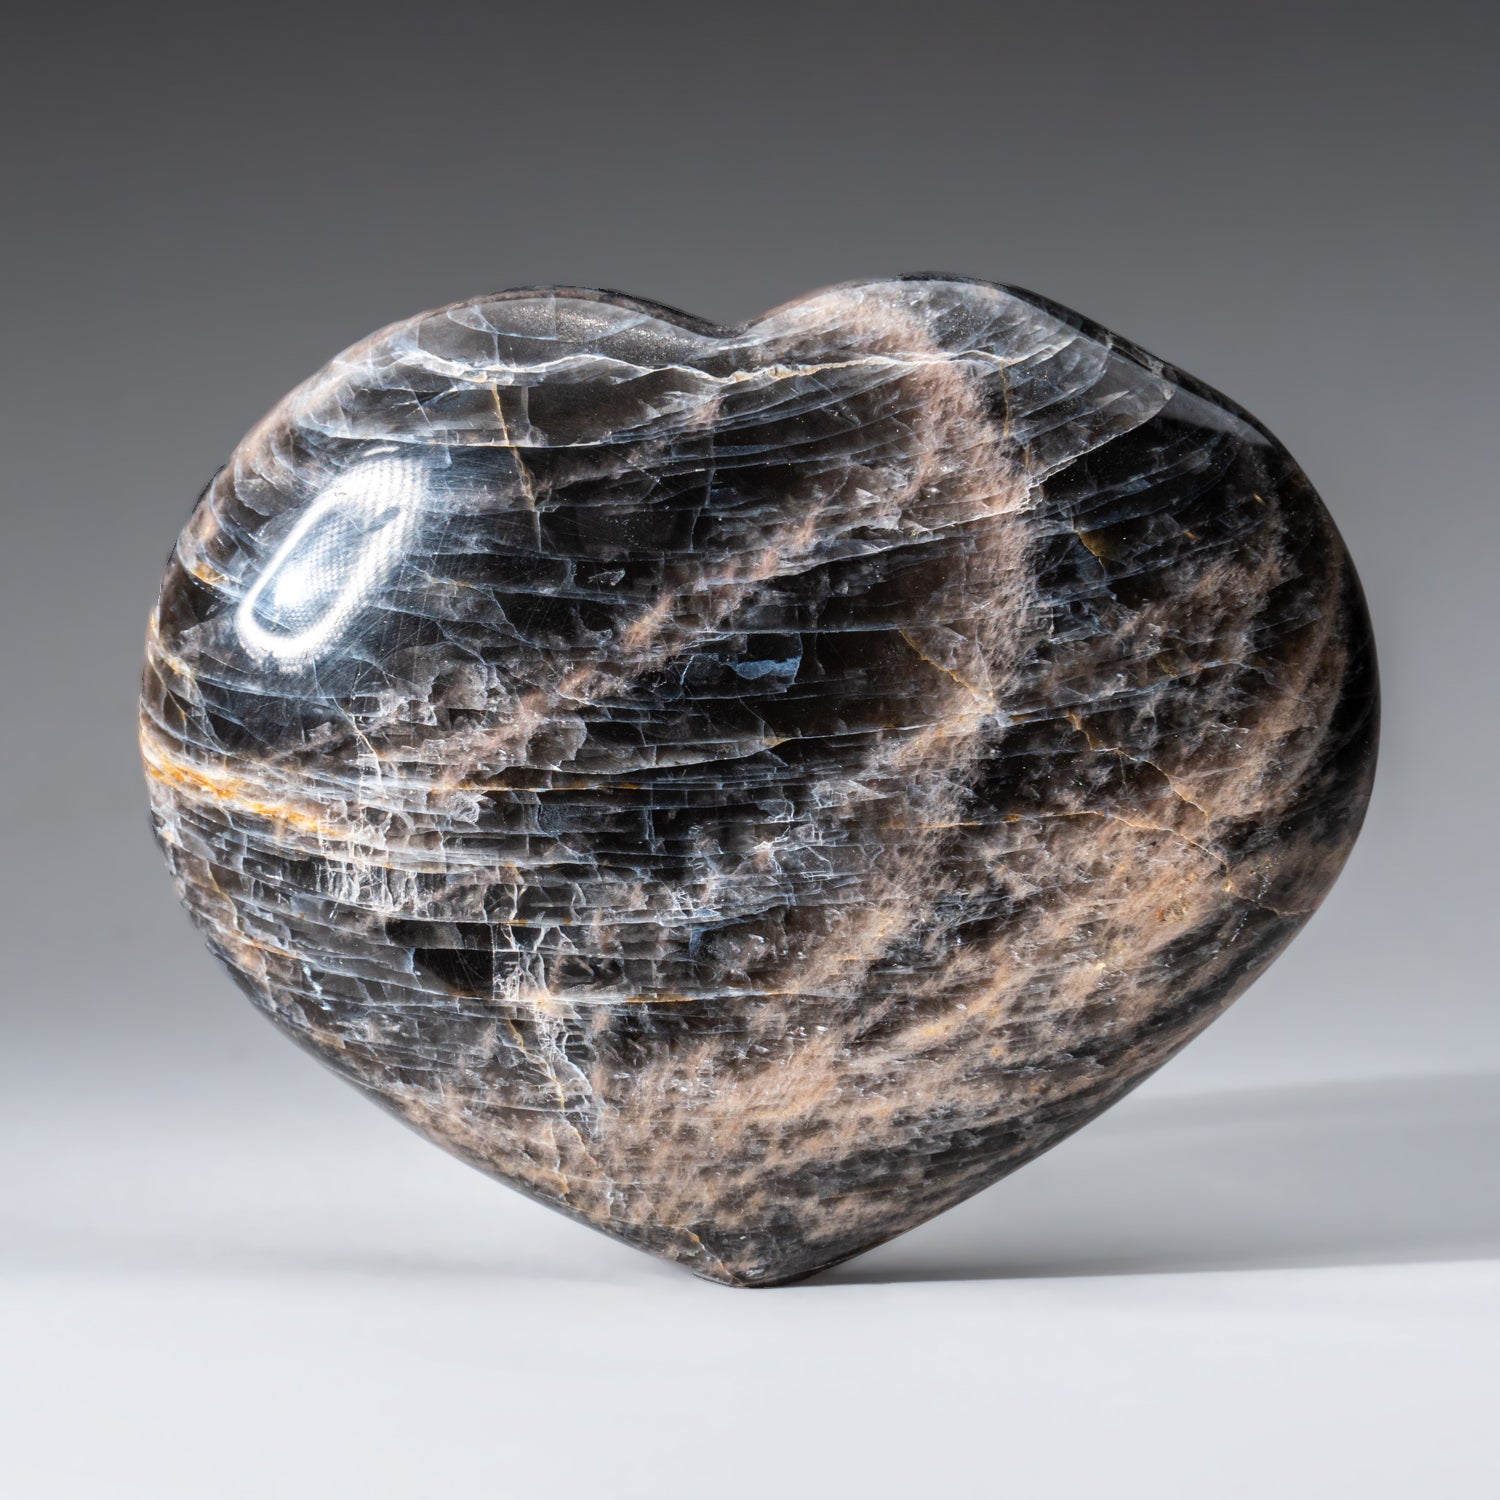 Genuine Polished Black Moonstone (Large) Heart from Madagascar